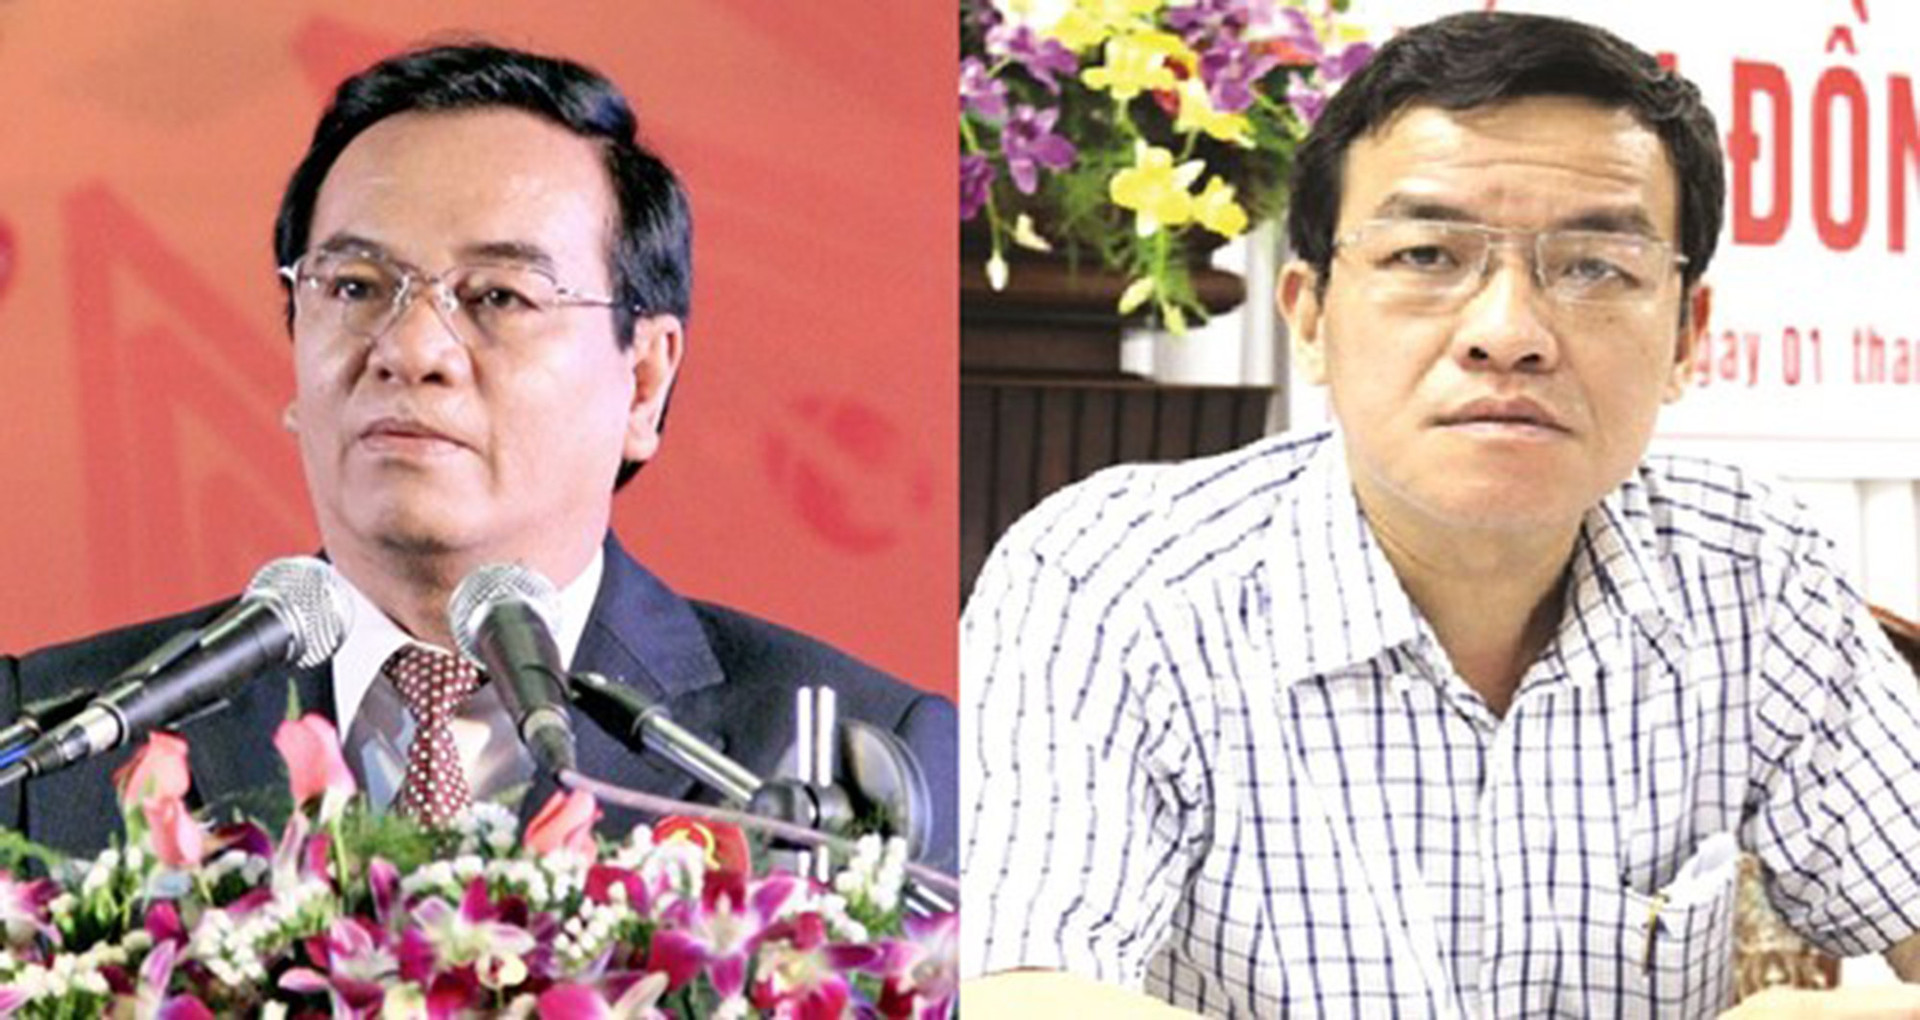 Vì sao cựu Bí thư và cựu Chủ tịch tỉnh Đồng Nai bị khởi tố, bắt tạm giam? - 1